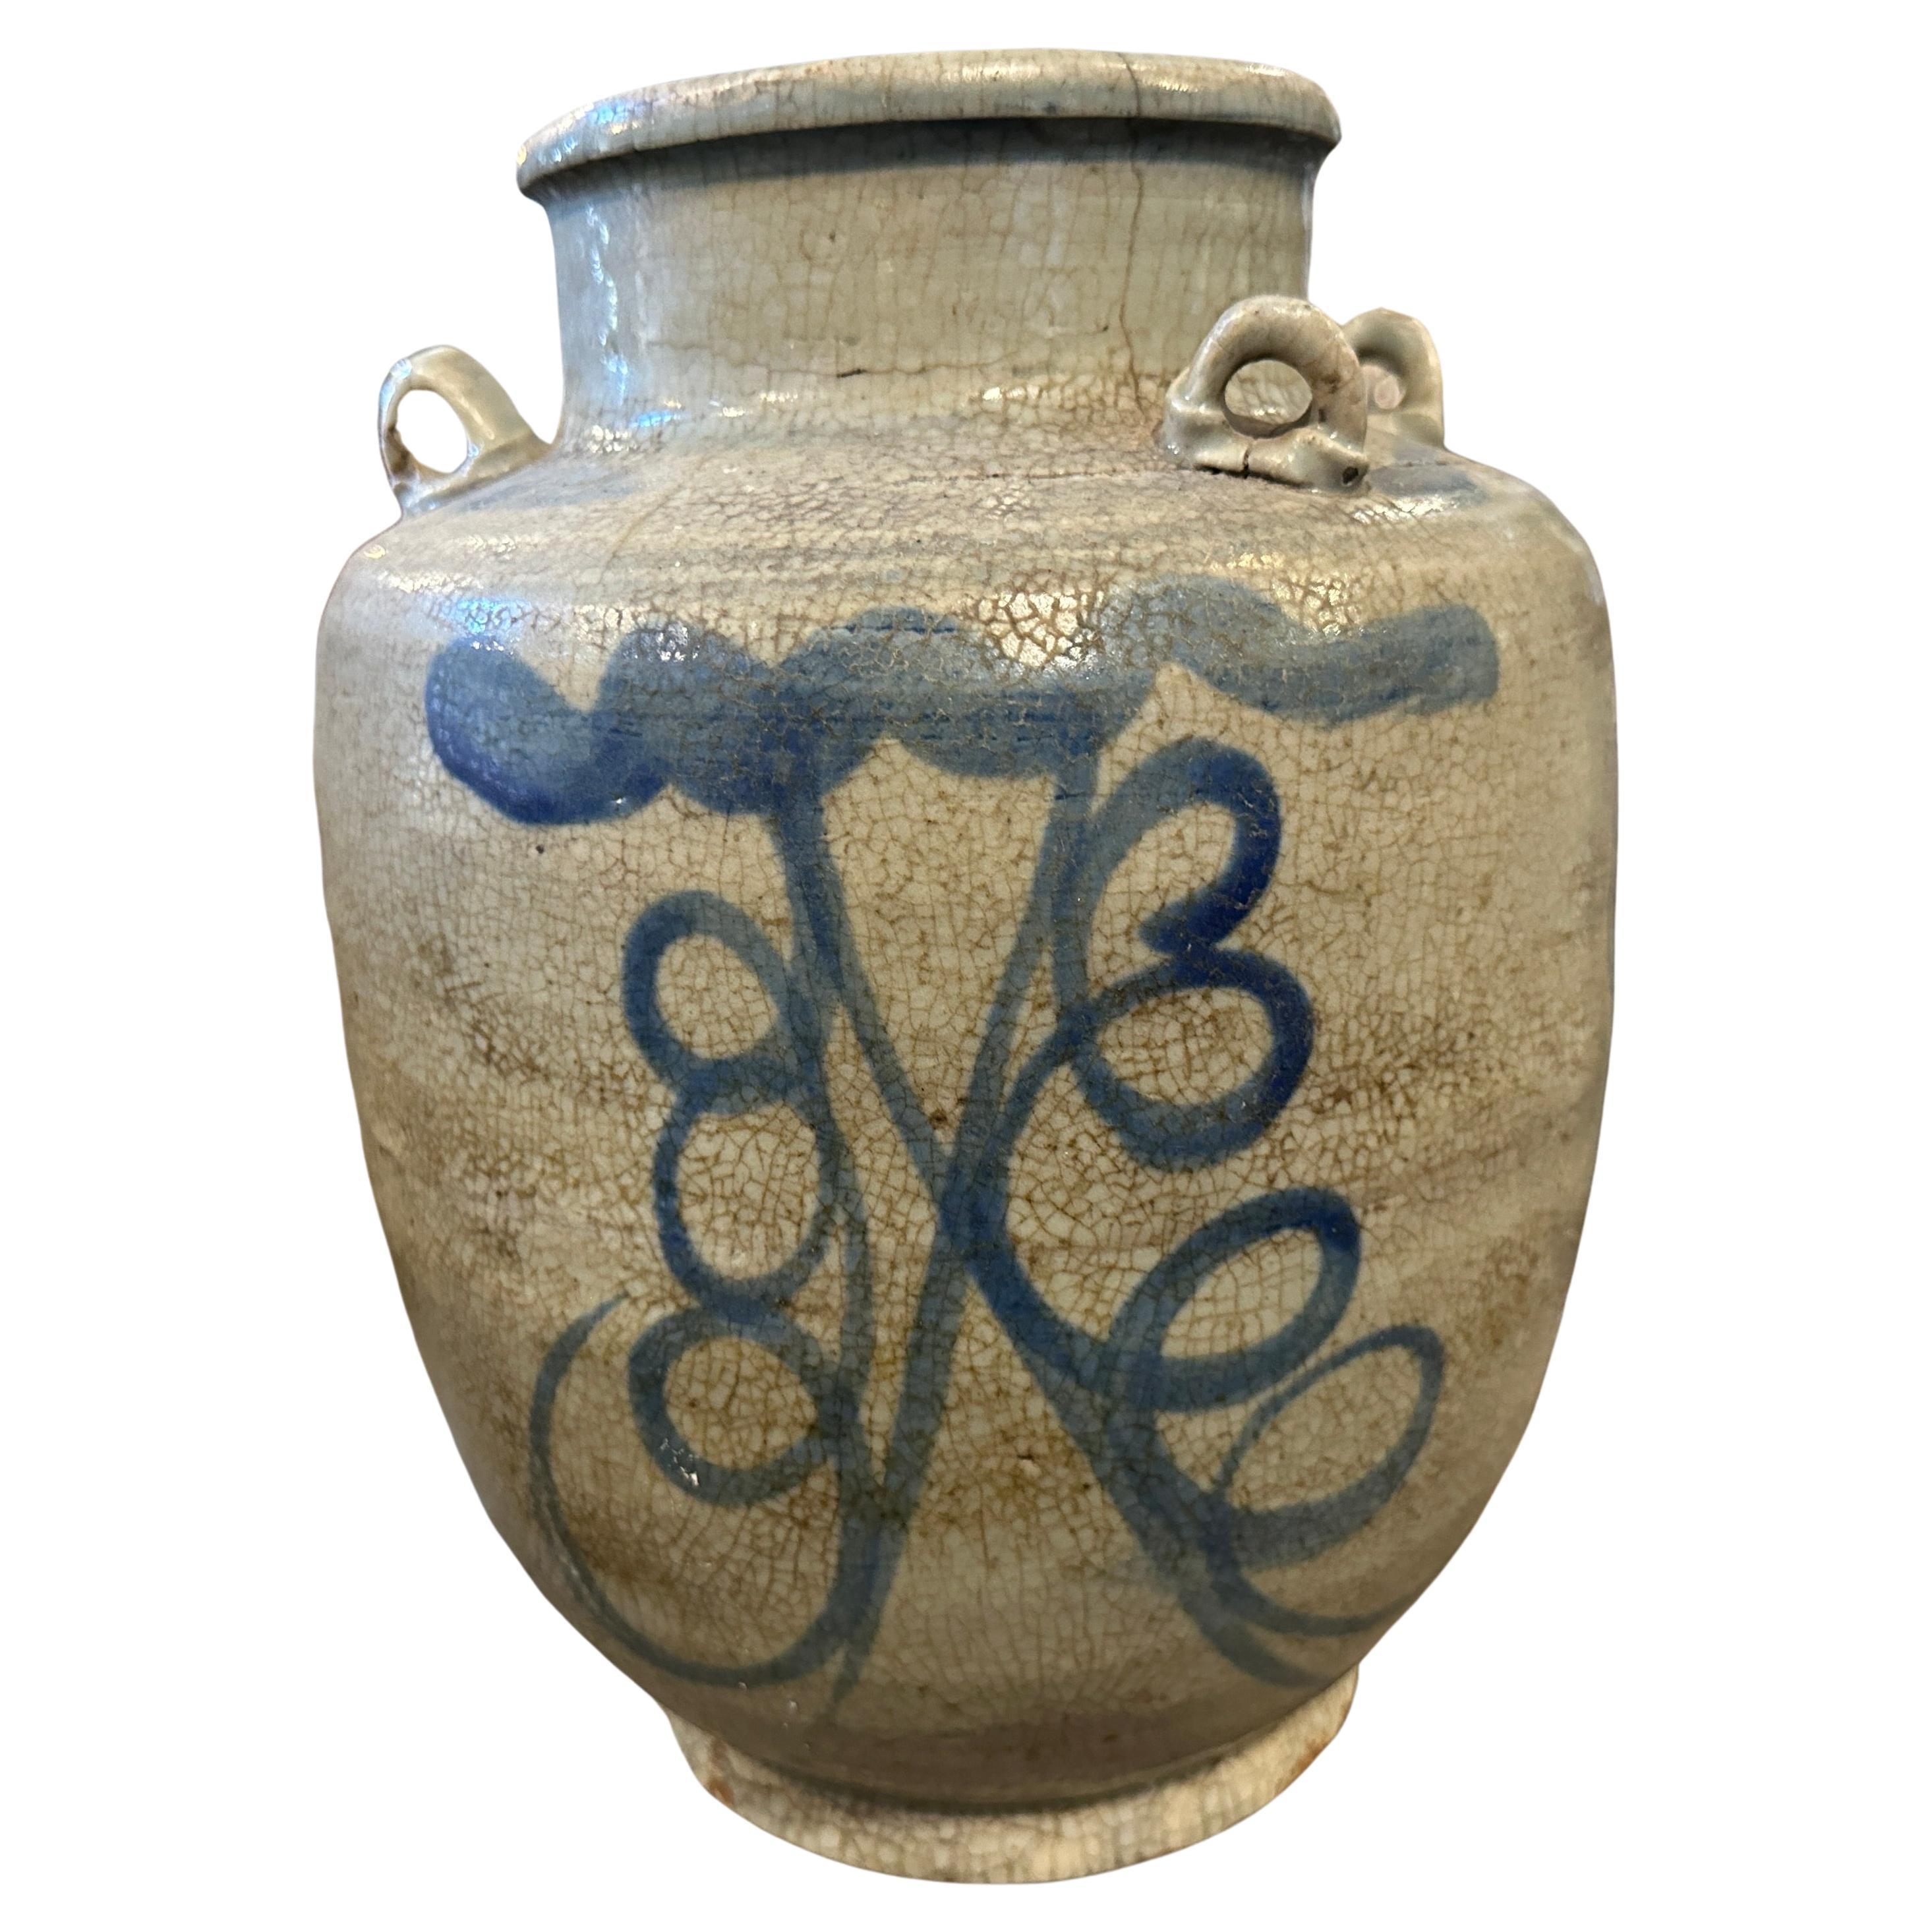 Der Krug wurde im späten 19. Jahrhundert in China hergestellt und weist aufwendige handgemalte traditionelle chinesische Motive in Blautönen auf weißem Grund auf. Die Vase ist im Originalzustand mit Gebrauchs- und Altersspuren. Sie wurde meist von